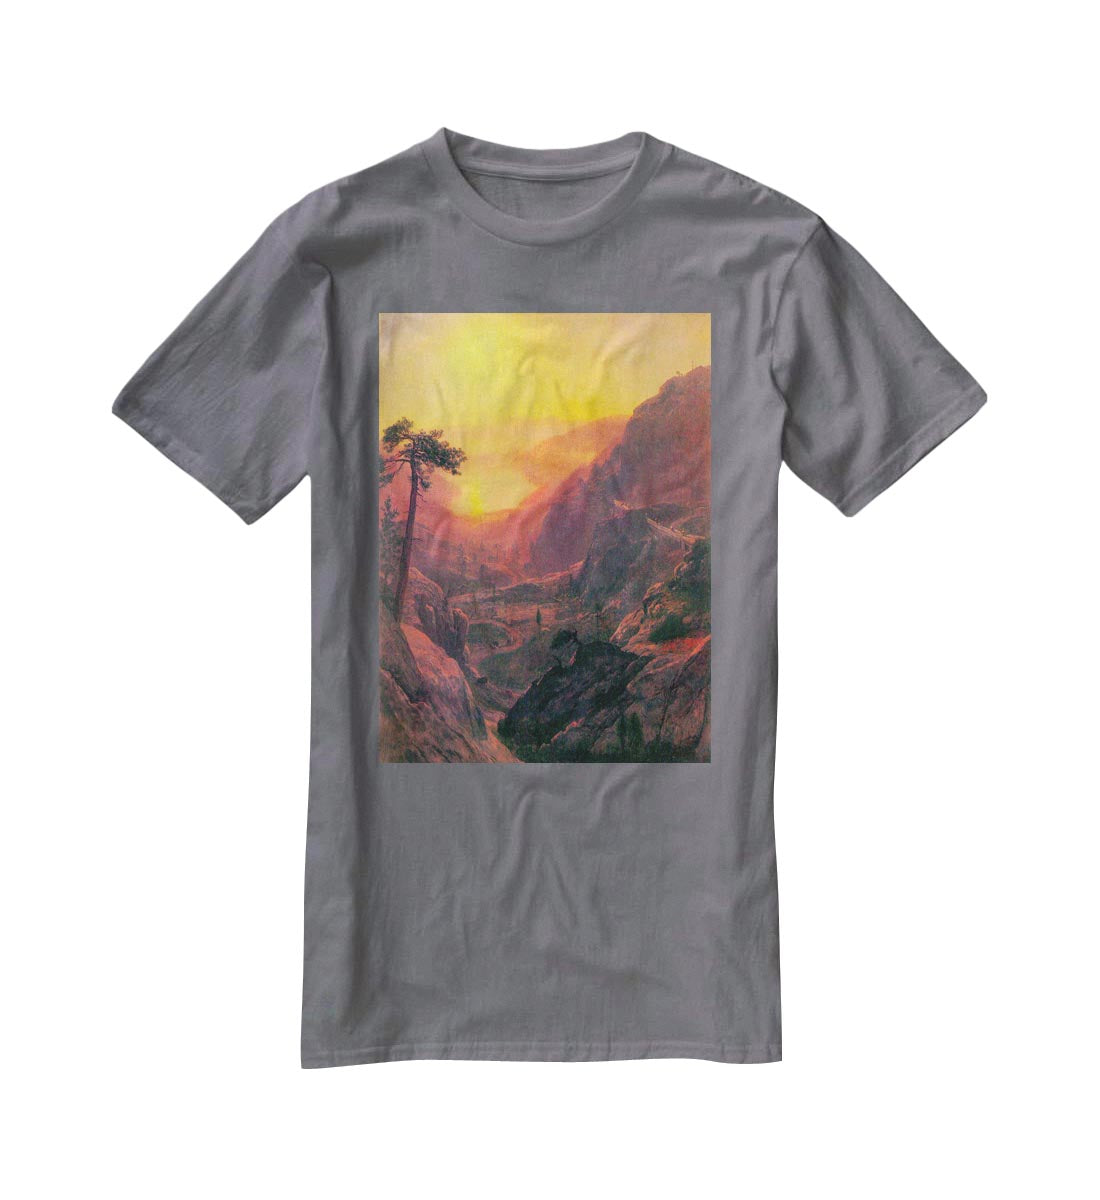 Donner Lake by Bierstadt T-Shirt - Canvas Art Rocks - 3